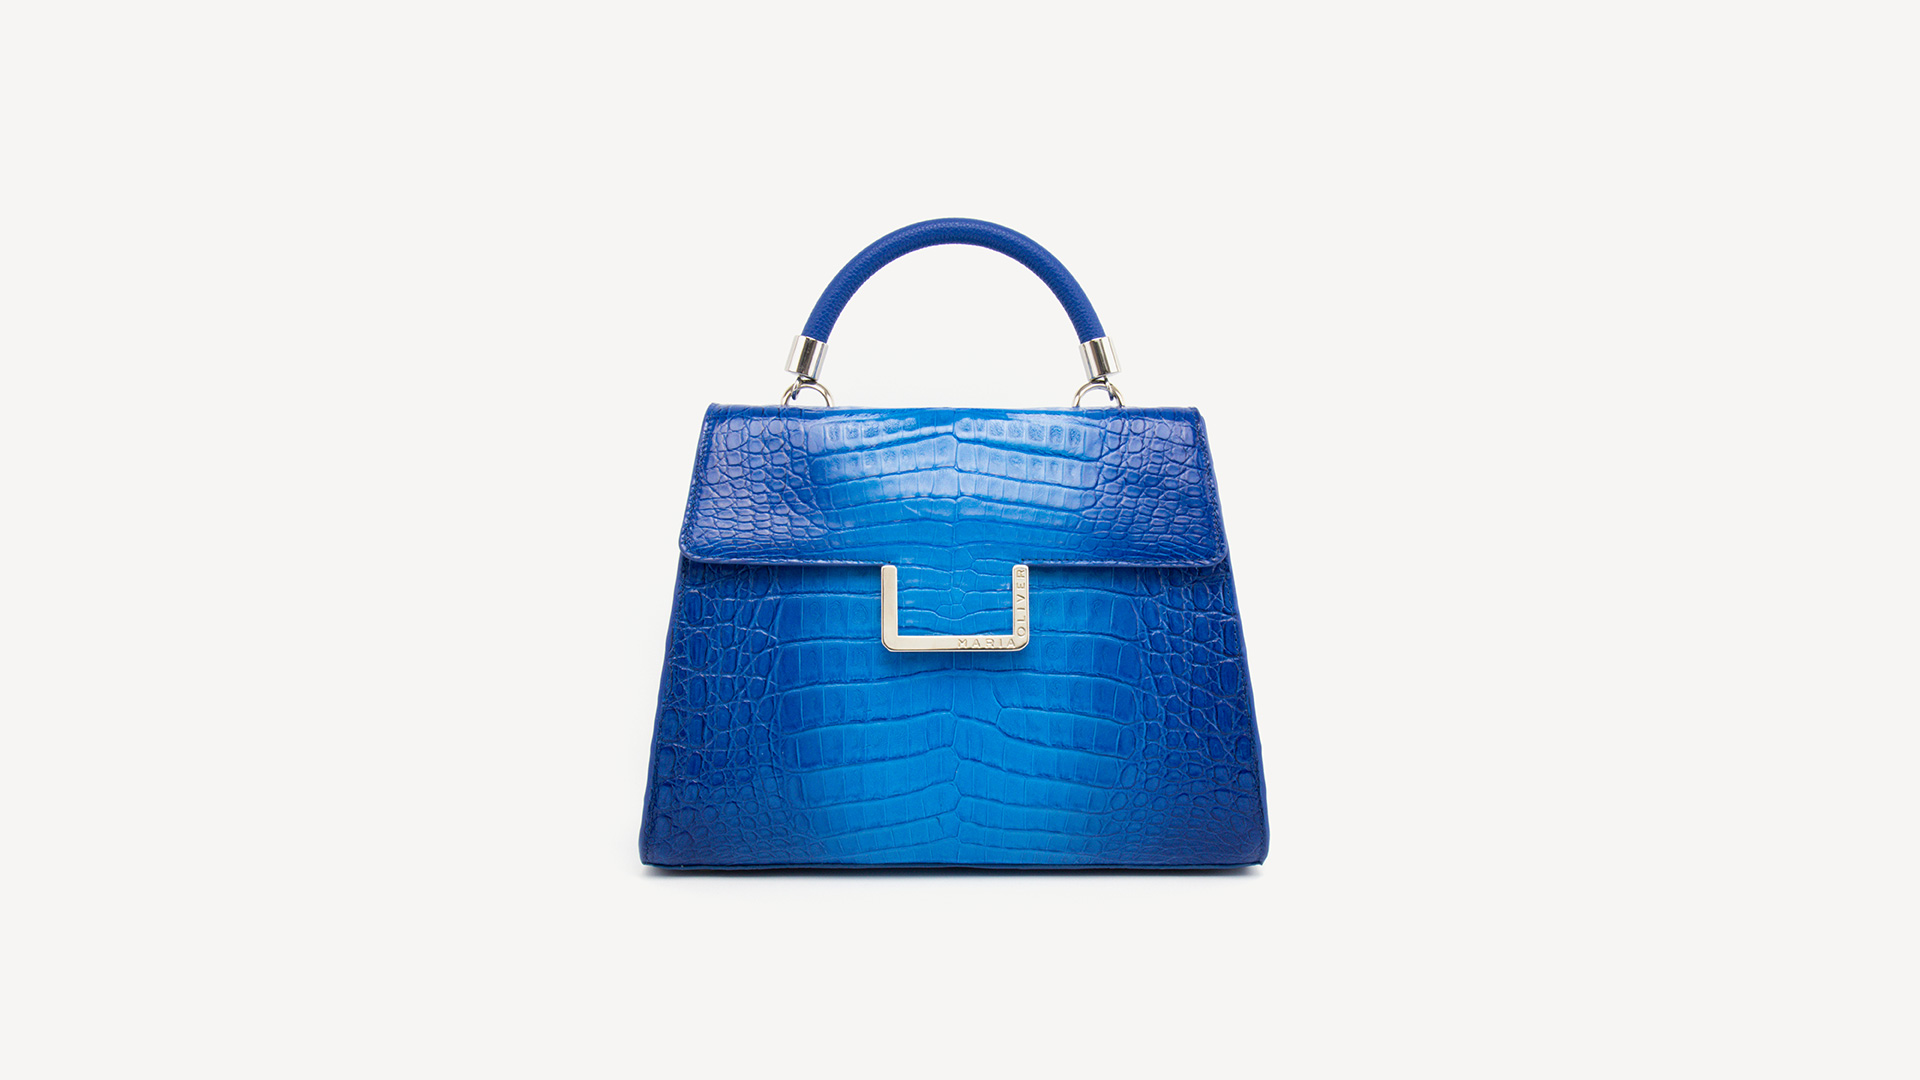 Turquoise purse bag, Crocodile handbag. MICHELLE-Front-CRC220026-020D-BLE-1